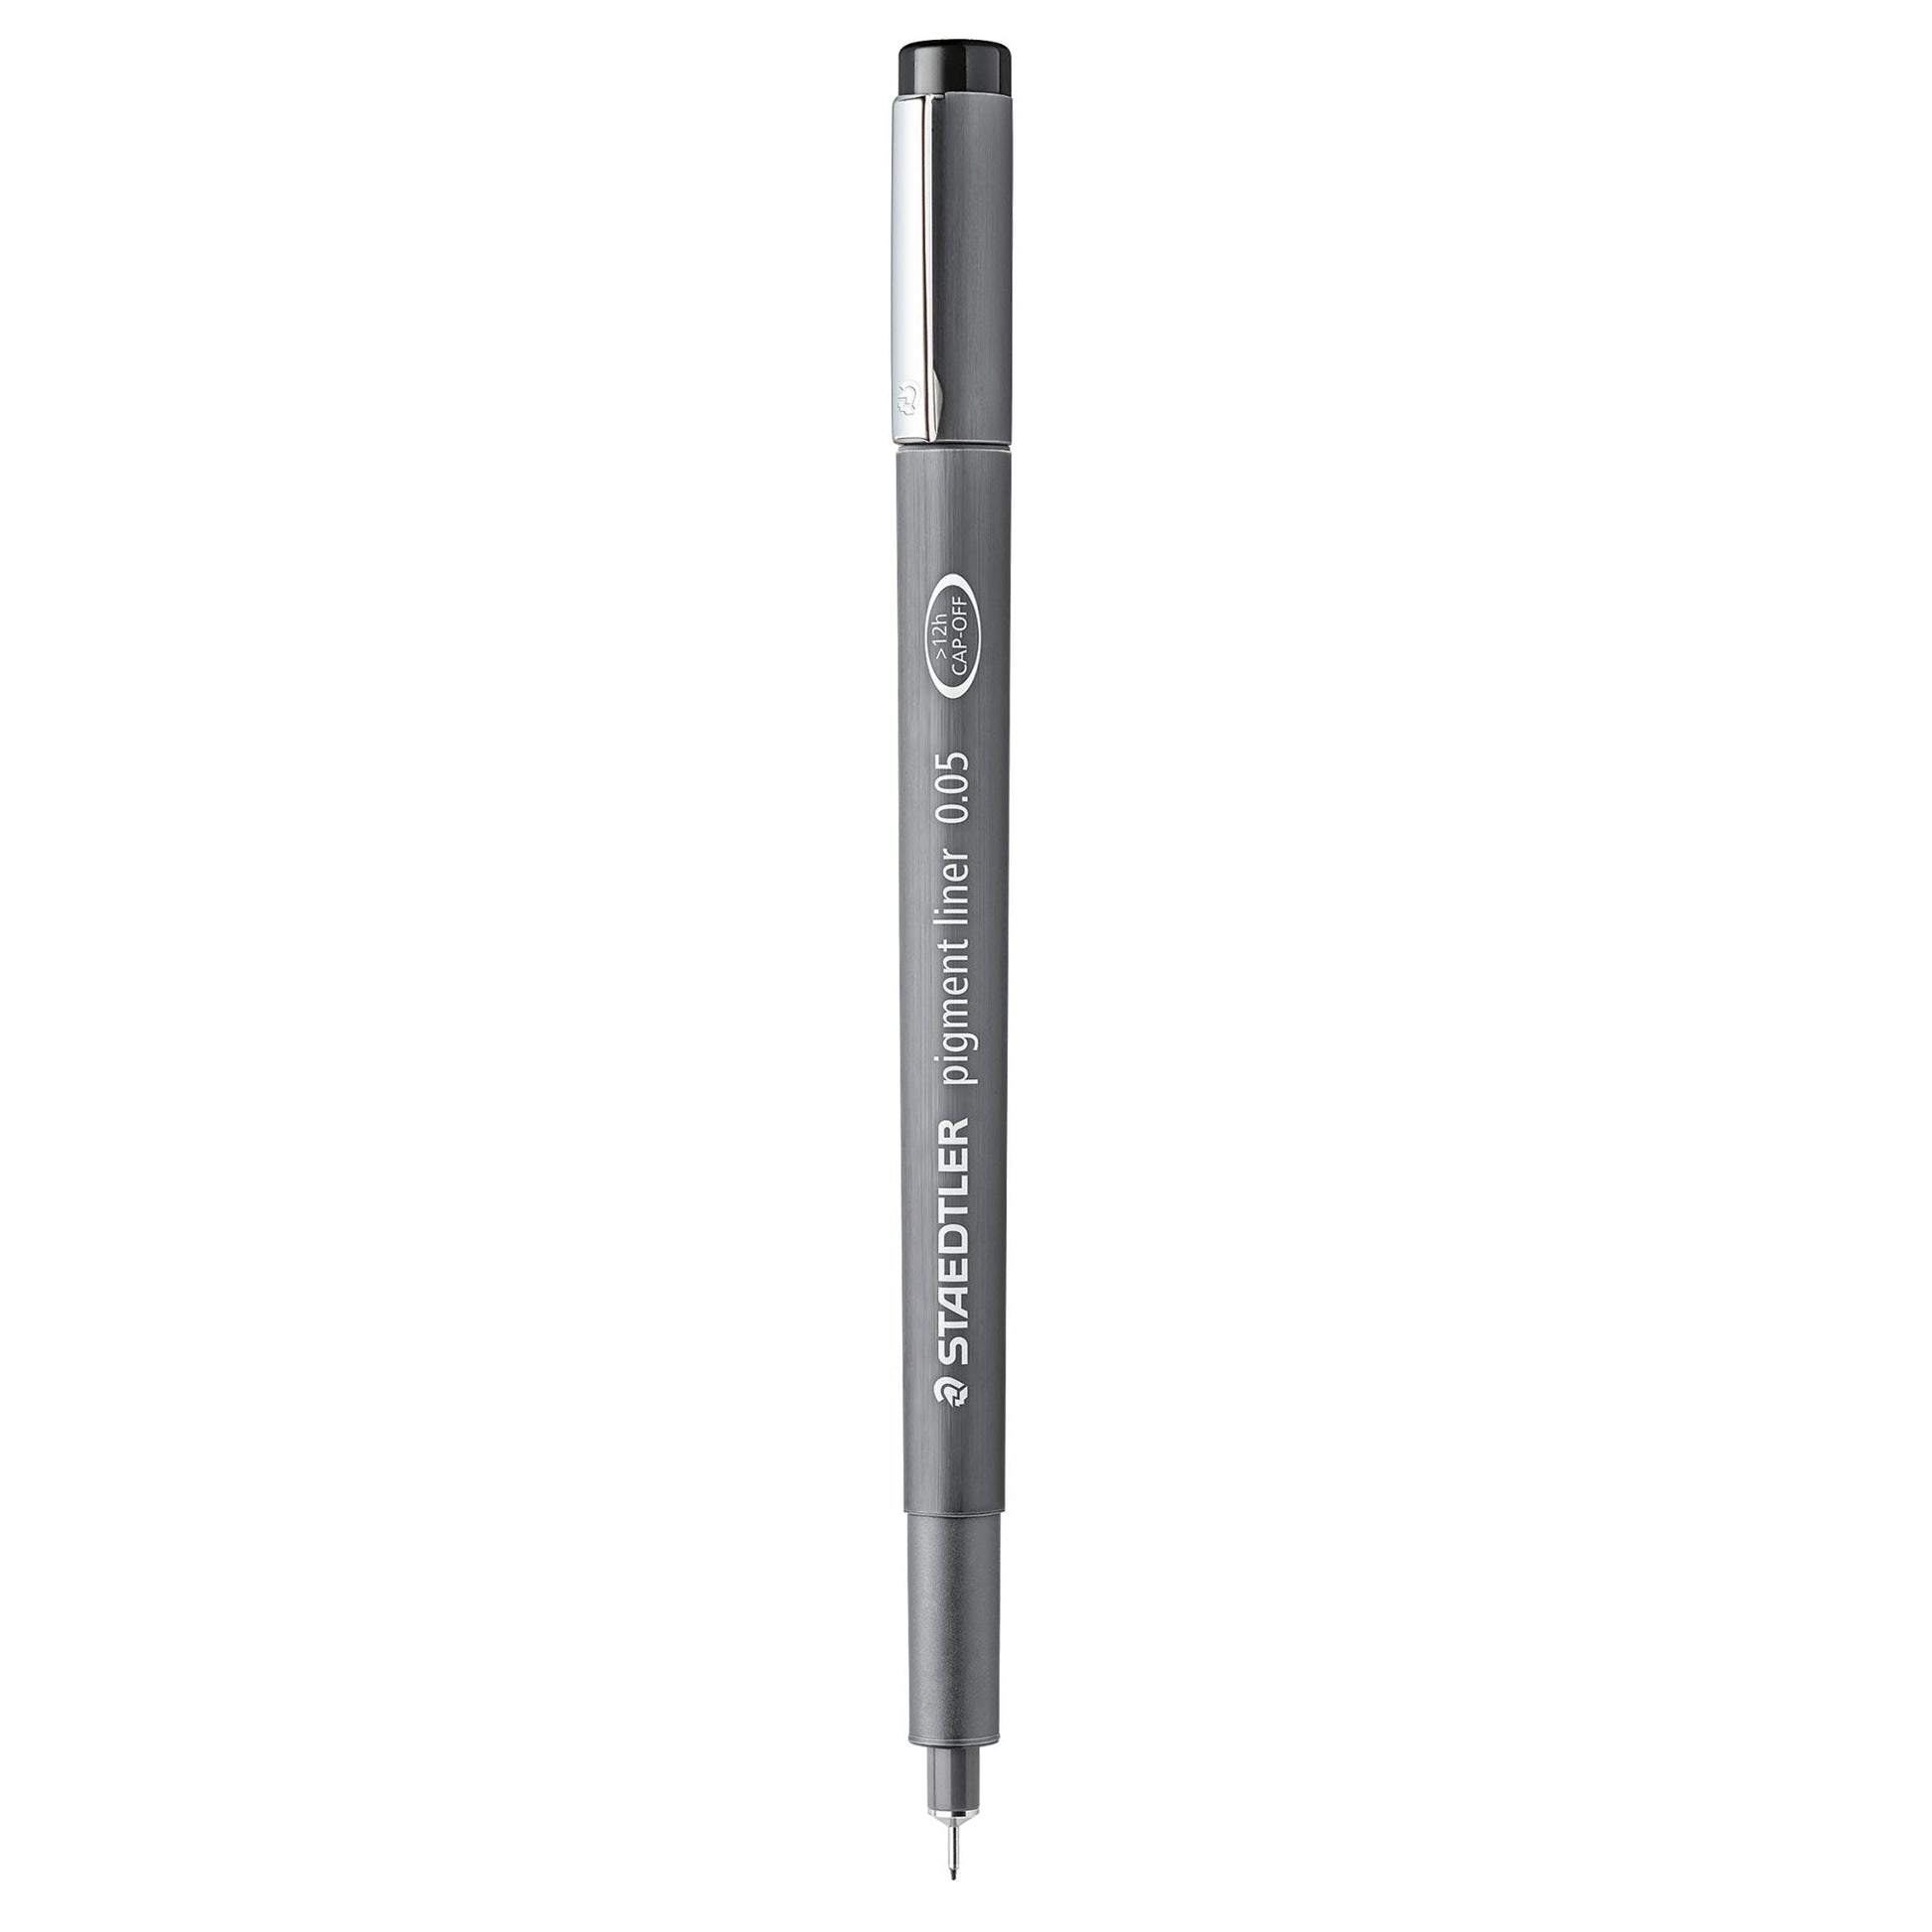 Staedtler Marsgraphic Fineliner Pen Pigment Black 0.05mm to 2.0 mm